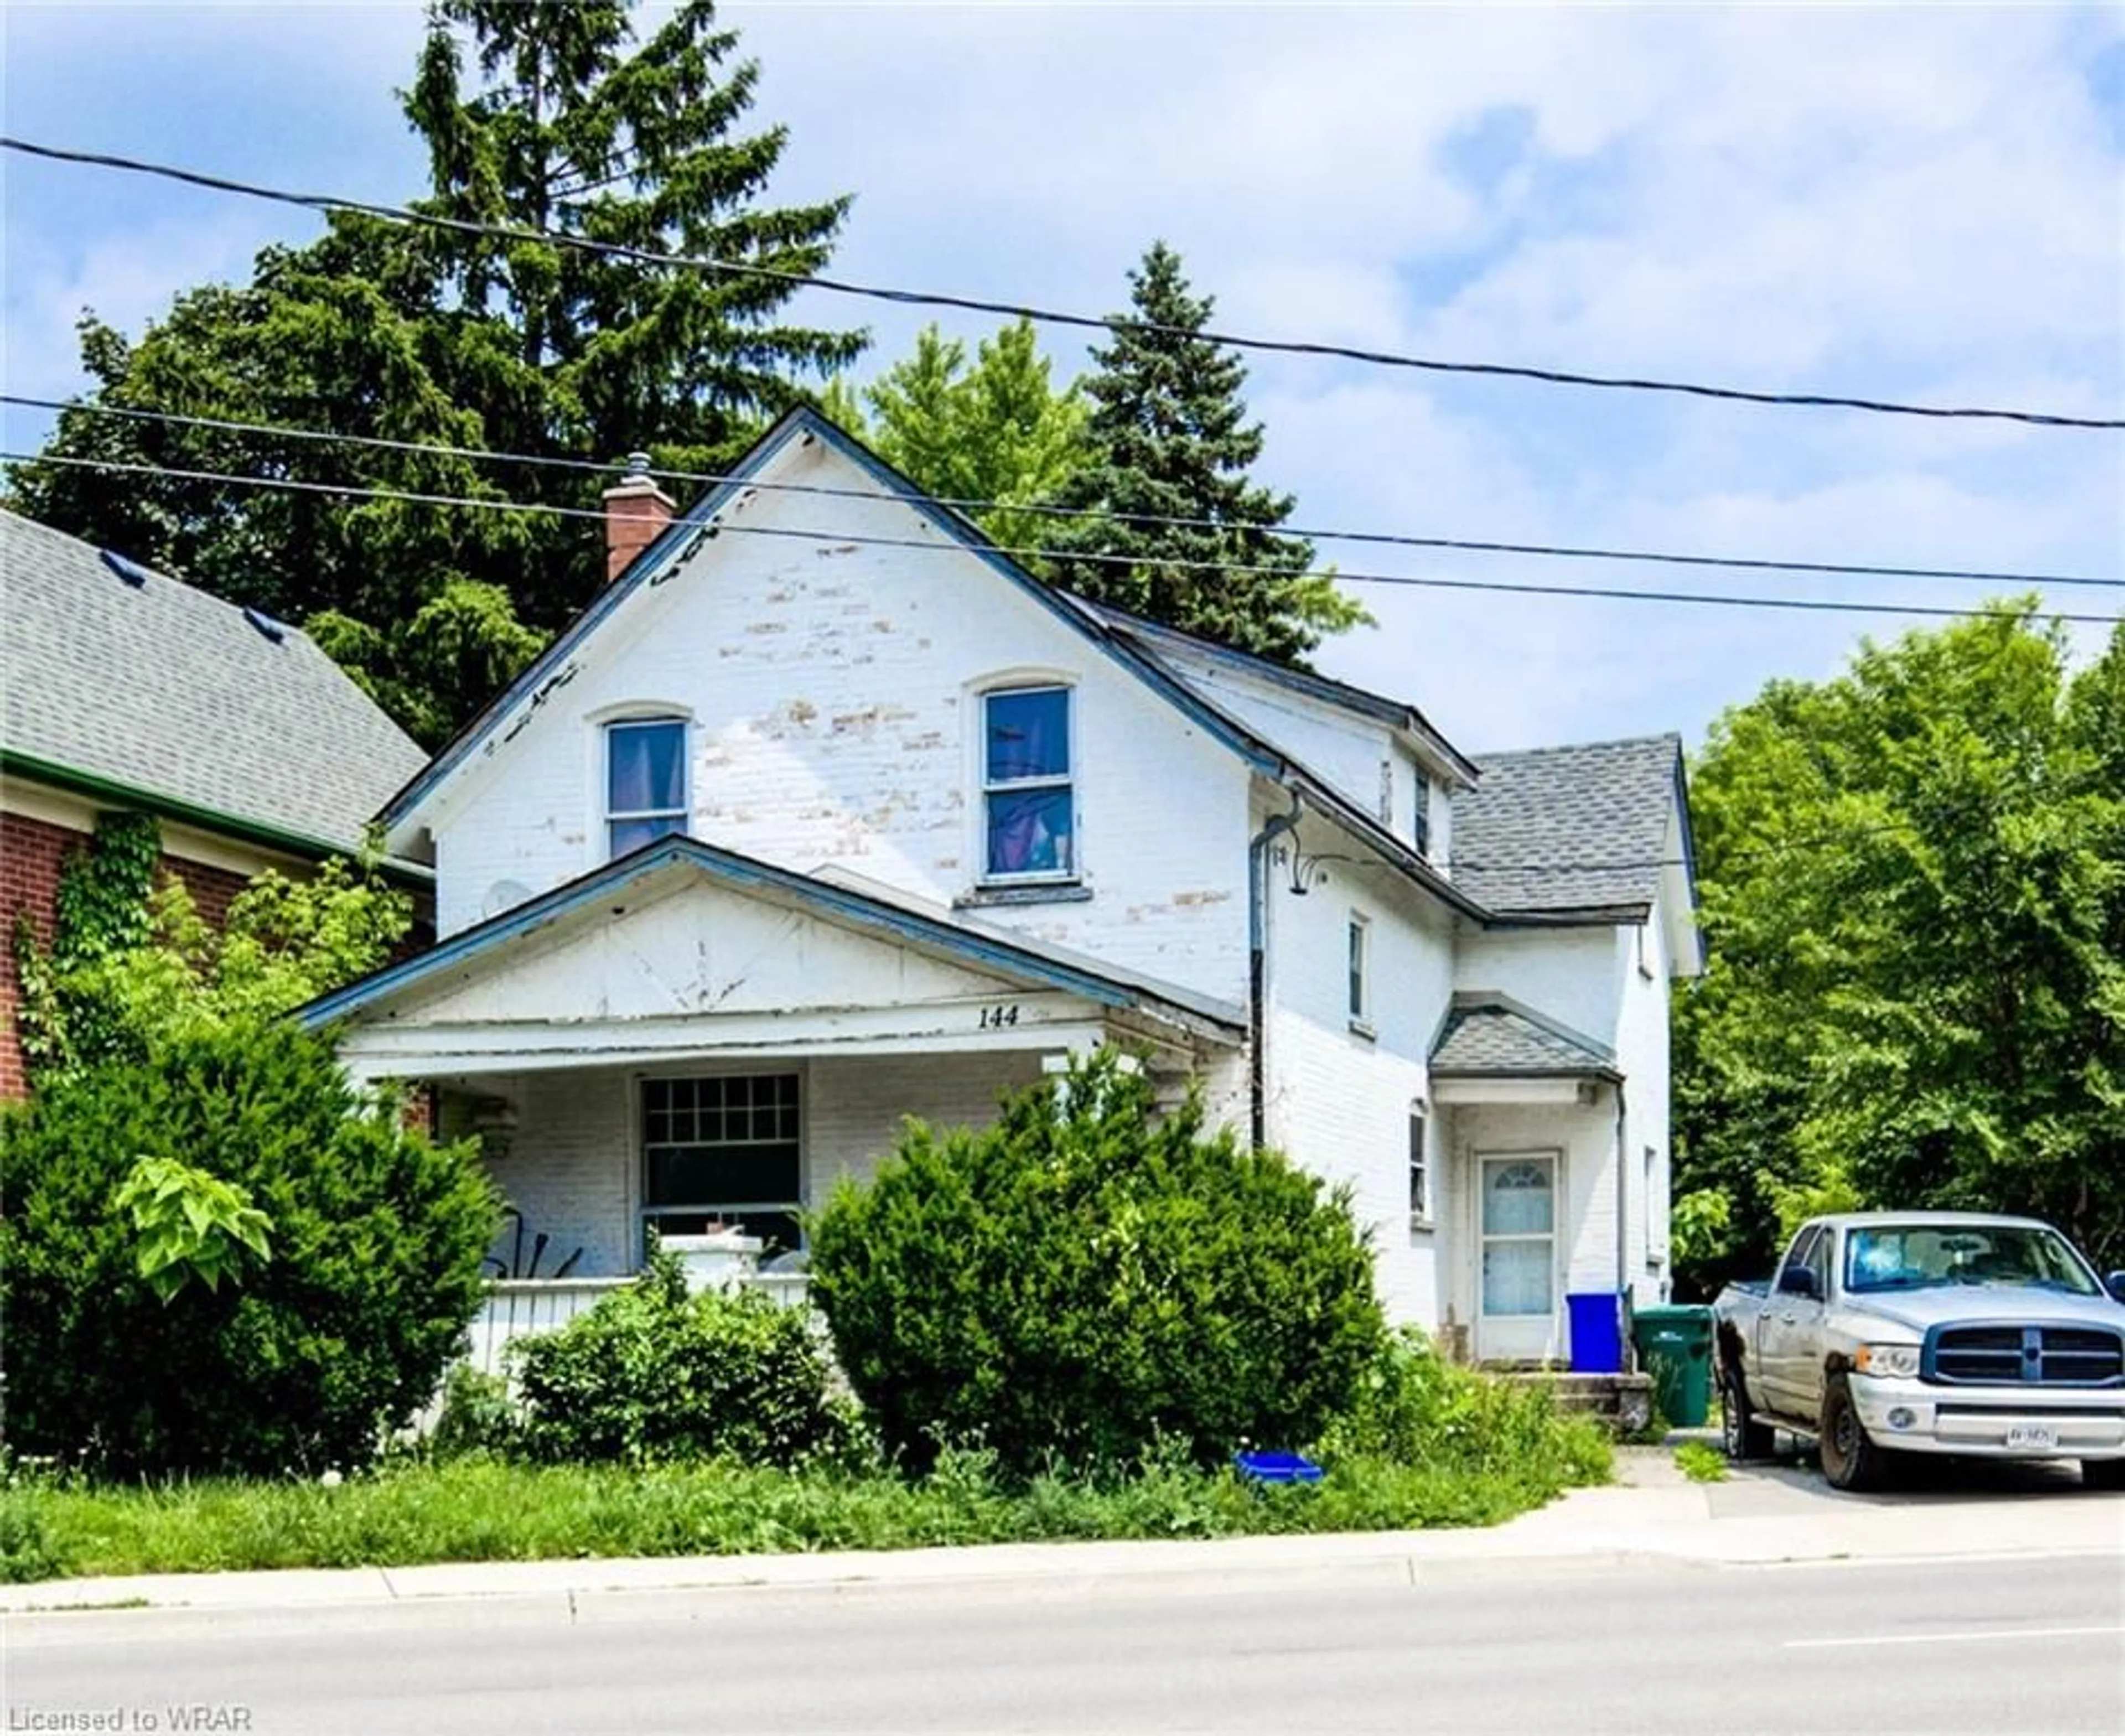 Cottage for 144 Weber St, Kitchener Ontario N2H 1C9